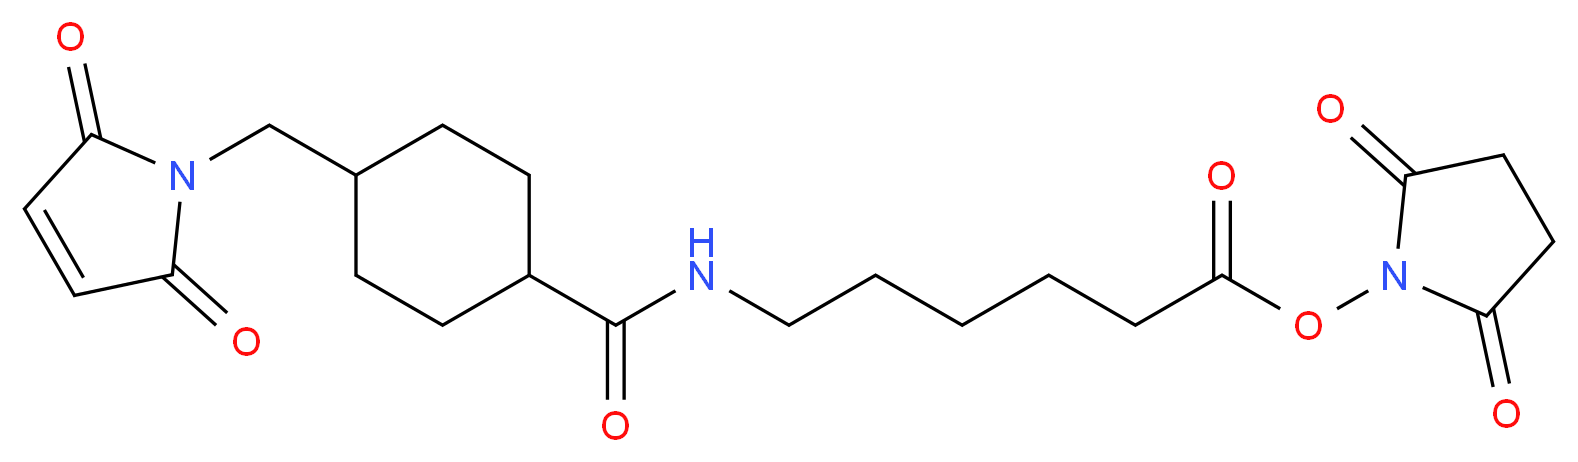 125559-00-4 molecular structure